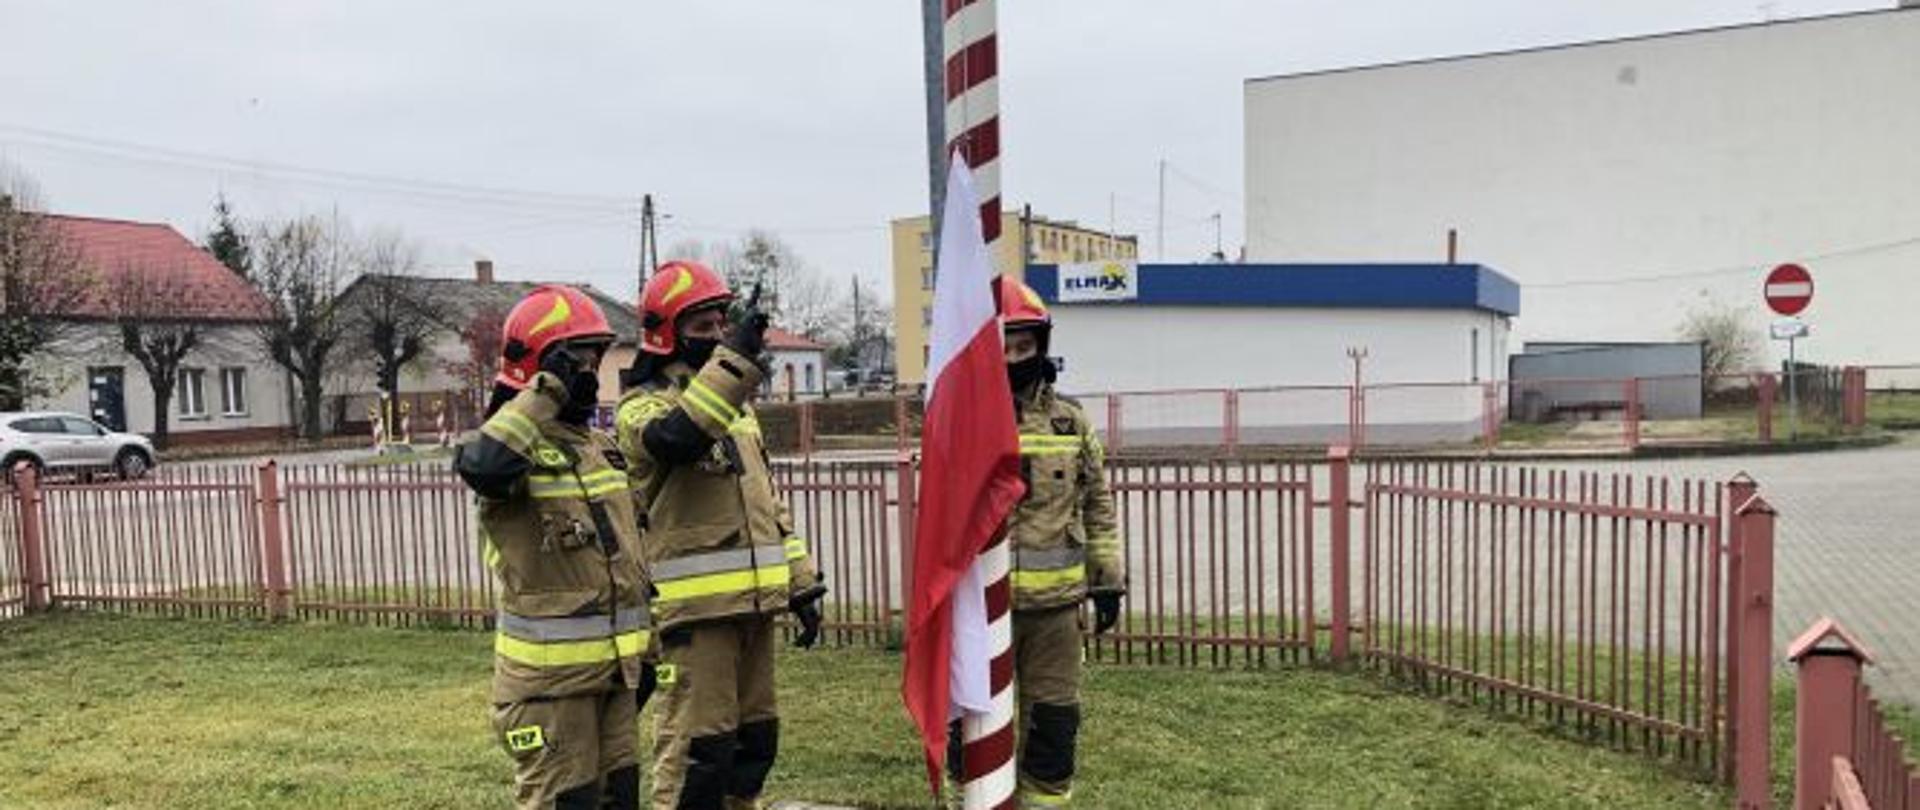 zdjęcie przedstawia salutujących trzech strażaków -poczet flagowy - przy maszcie na którym zawieszona jest flaga. zdjęcie wykonano z boku masztu. w tle widać budynki mieszkale i wybrukowany plac zewnętrzny komendy. 